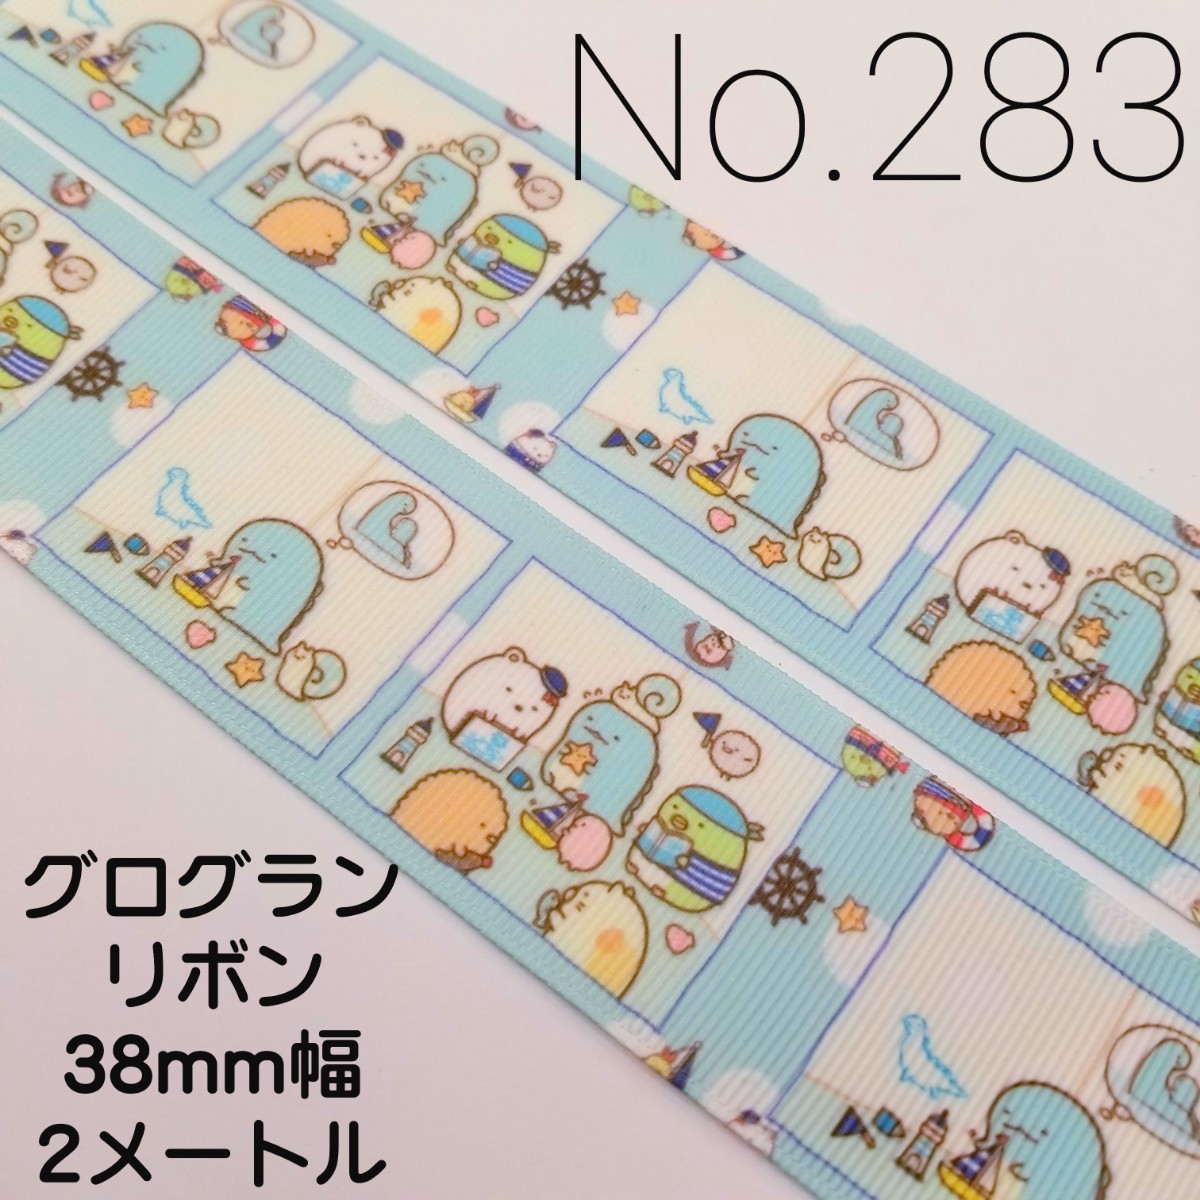 No.283 キャラクターリボン38mm幅 2メートル(すみっコぐらし)